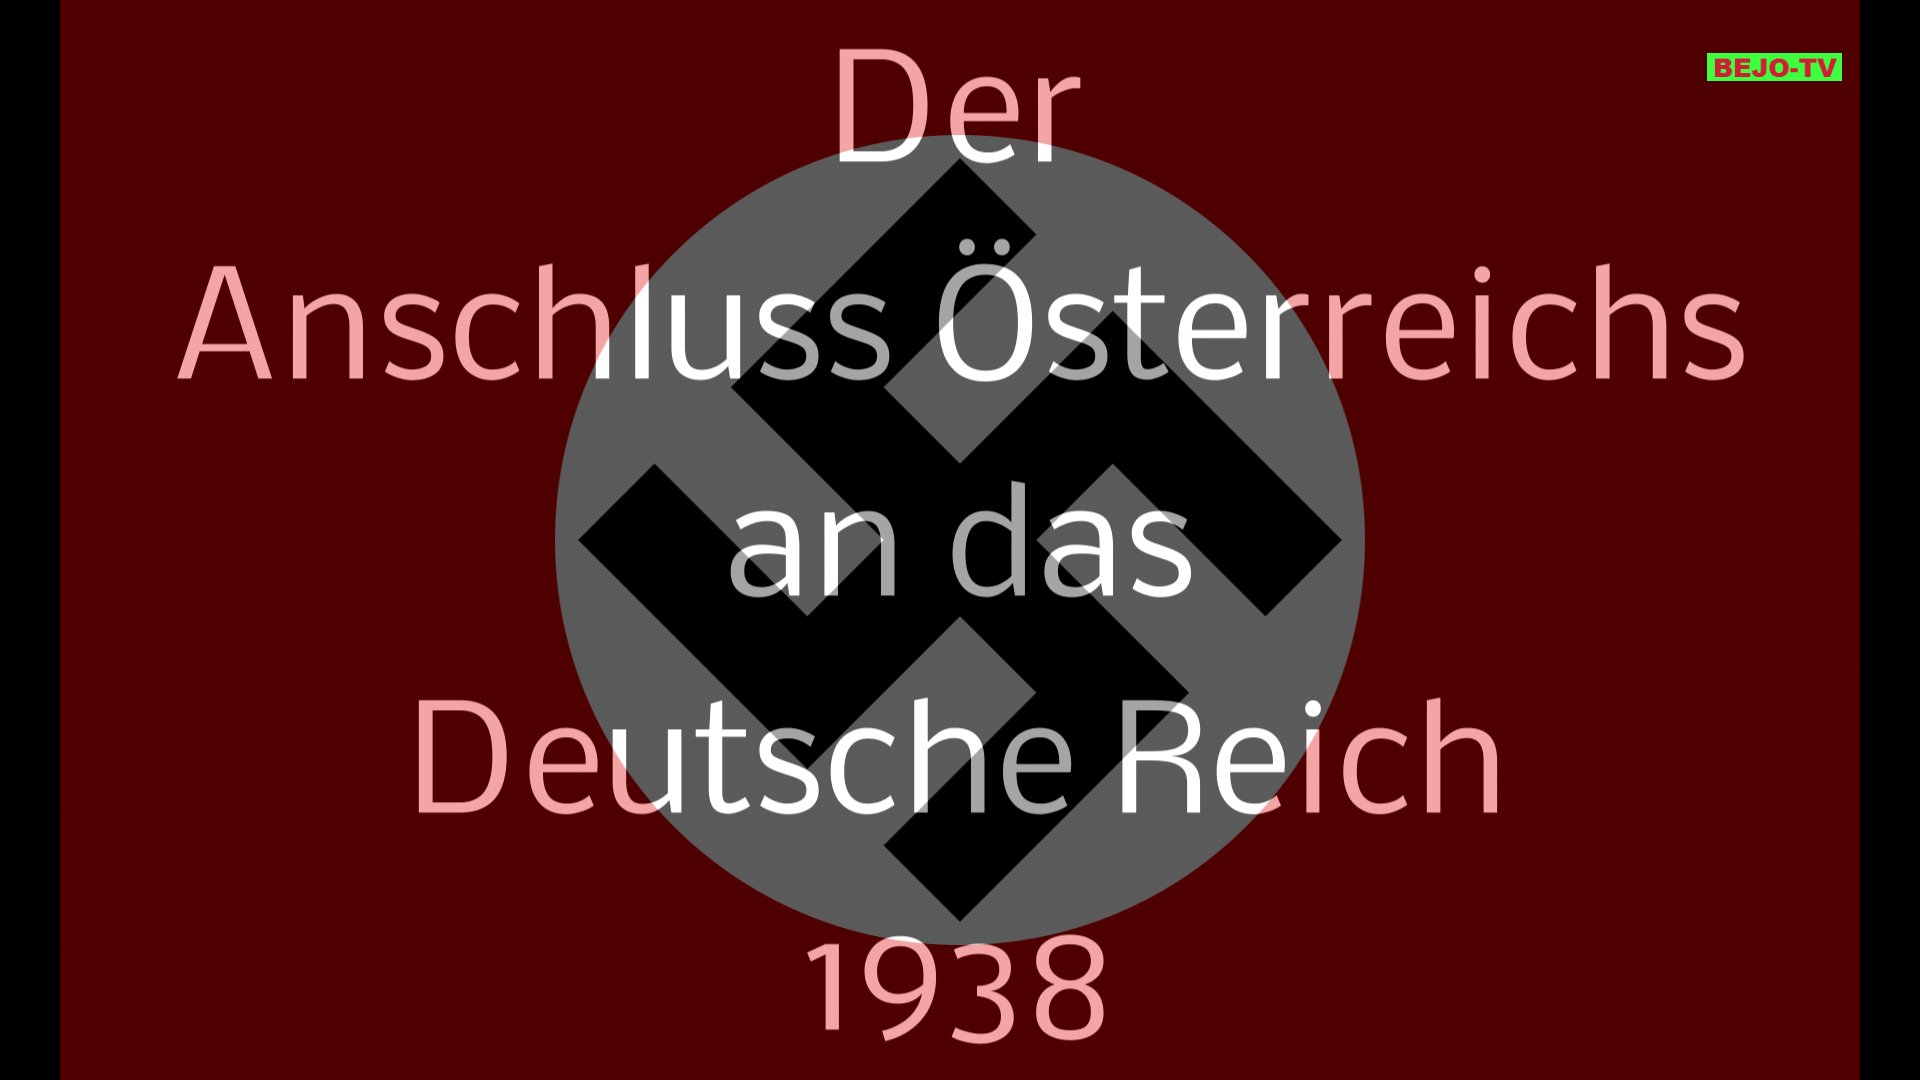 Der Anschluss Österreichs im Jahr 1938